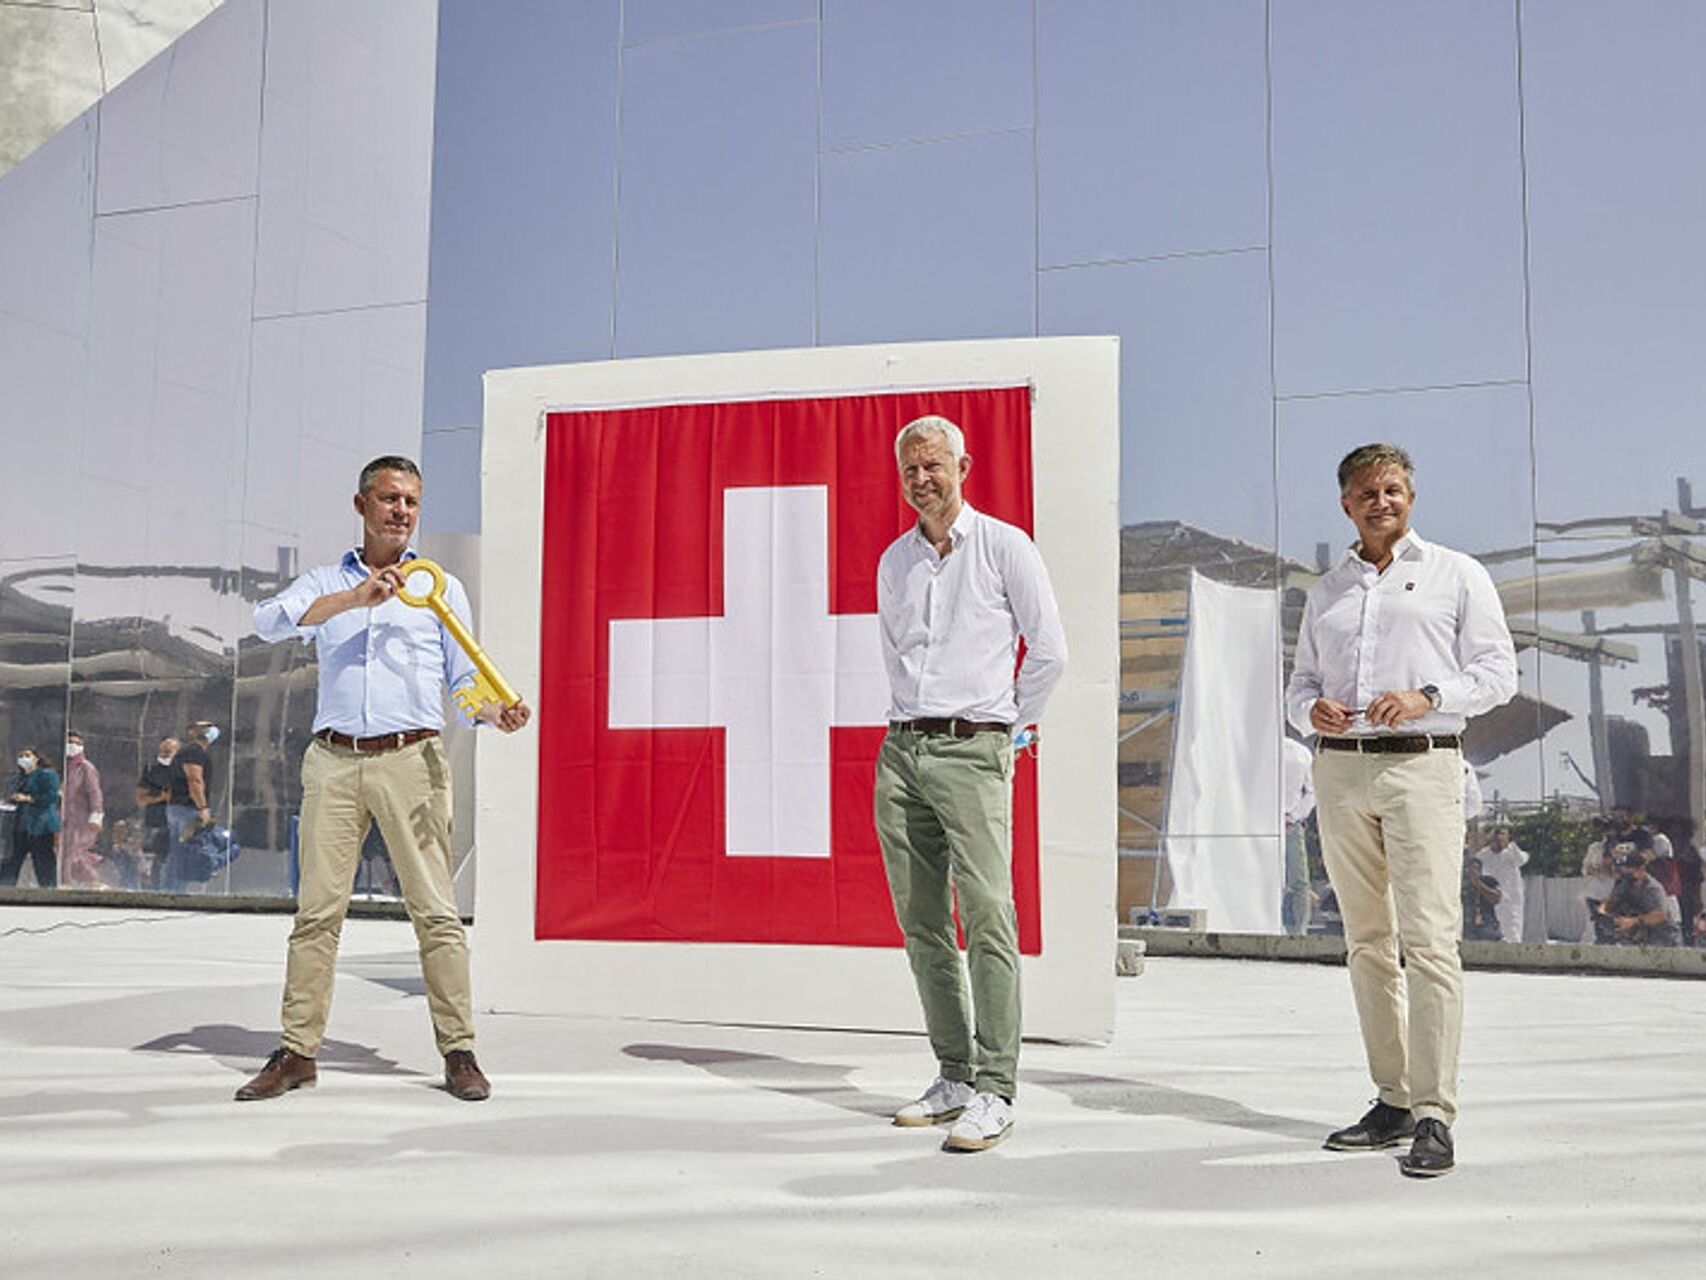 Pavijoni zviceran në Dubai Expo dhe menaxherët Manuel Salchli, Nicolas Bideau dhe Massimo Baggi me rastin e vernisazhit zyrtar